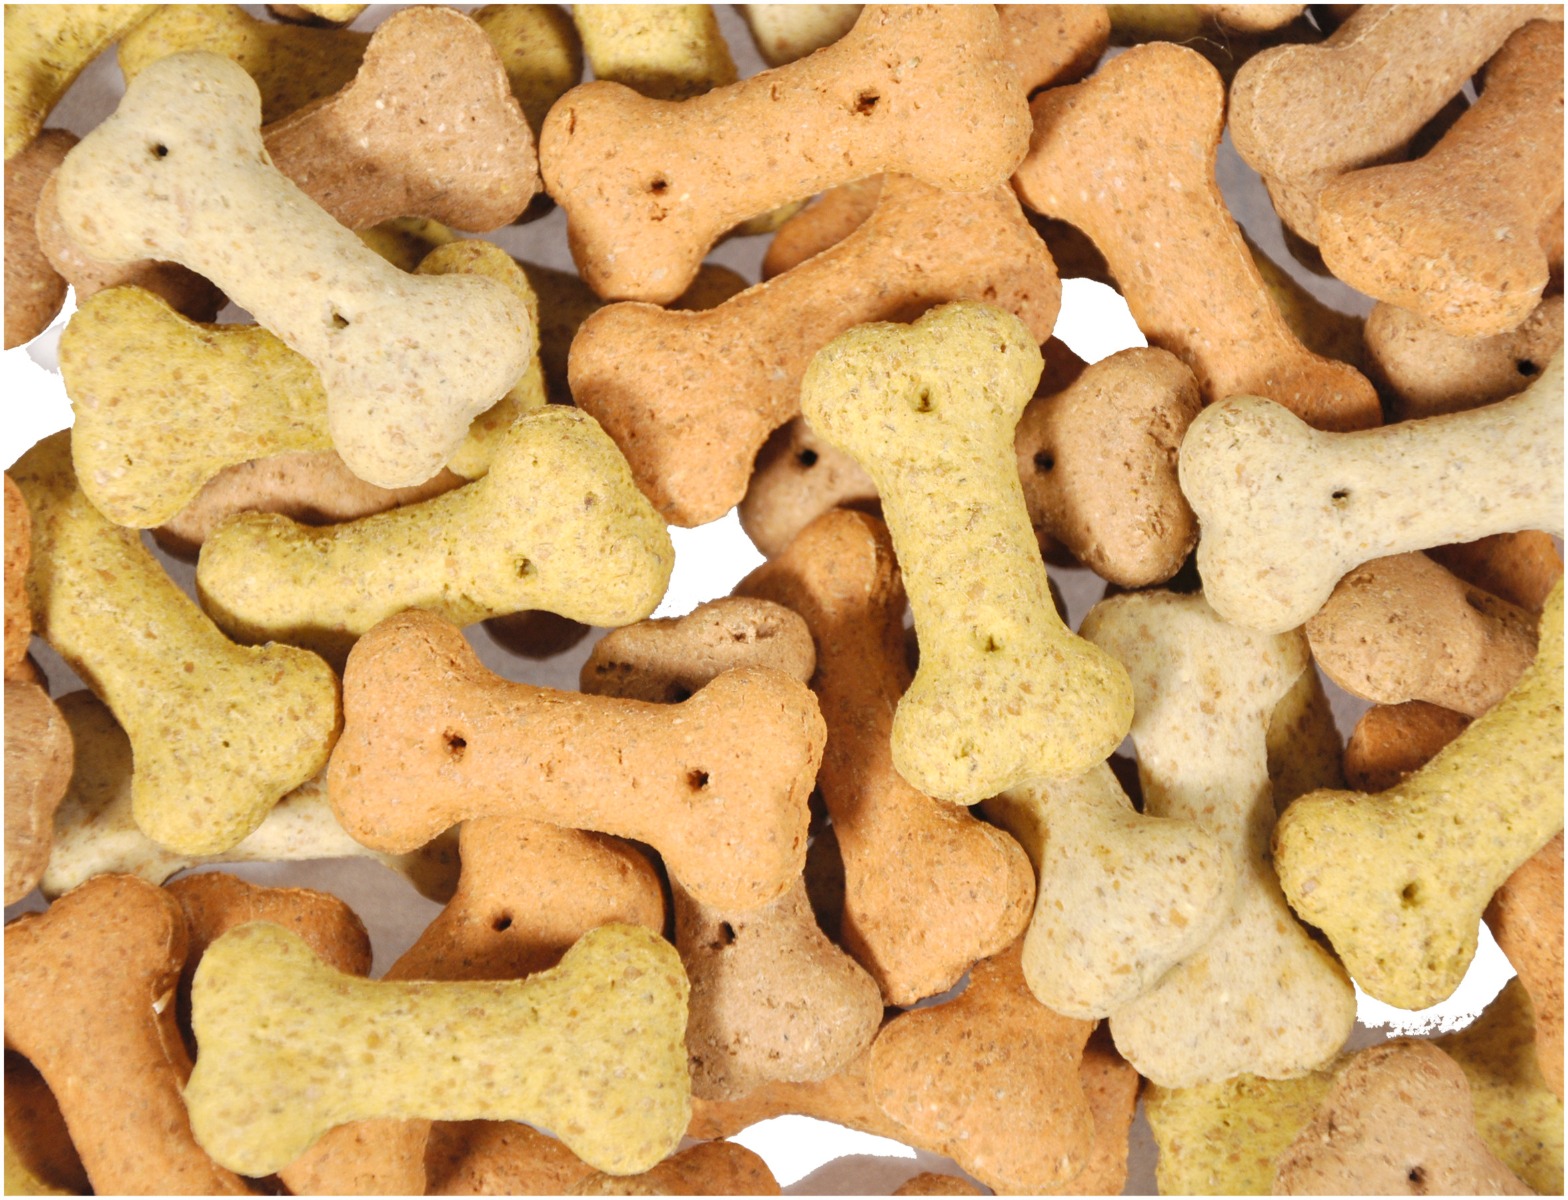 Afbeelding Snack Hond Biscuit Bones Mix 500 g